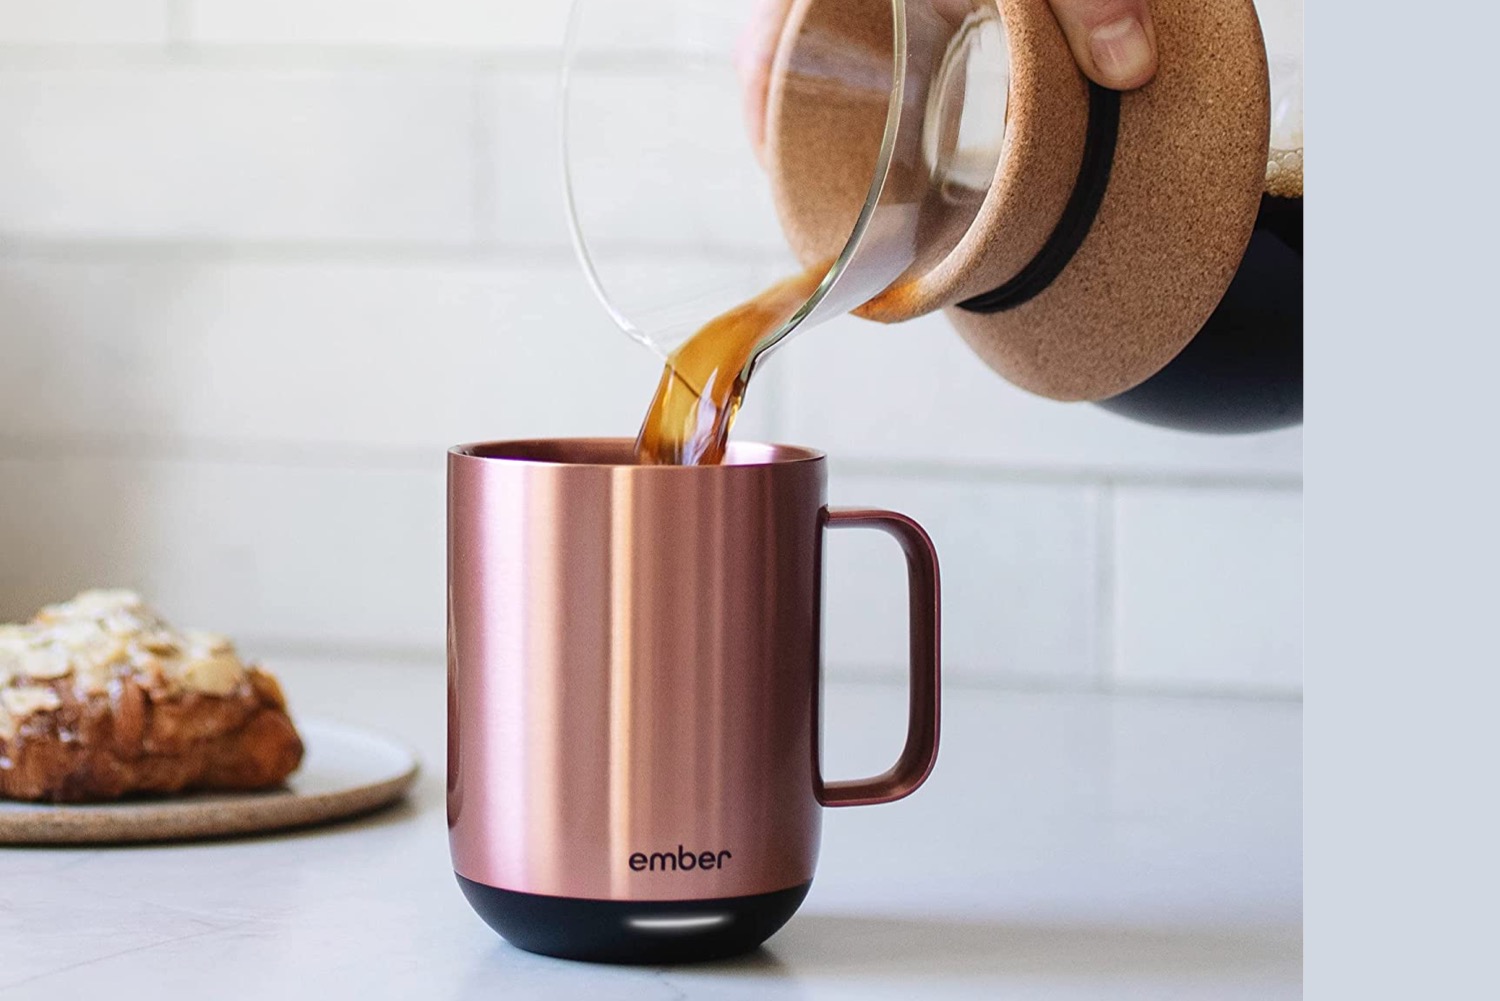 https://www.guidingtech.com/wp-content/uploads/Ember-Best-Coffee-Mug-Warmers.jpeg